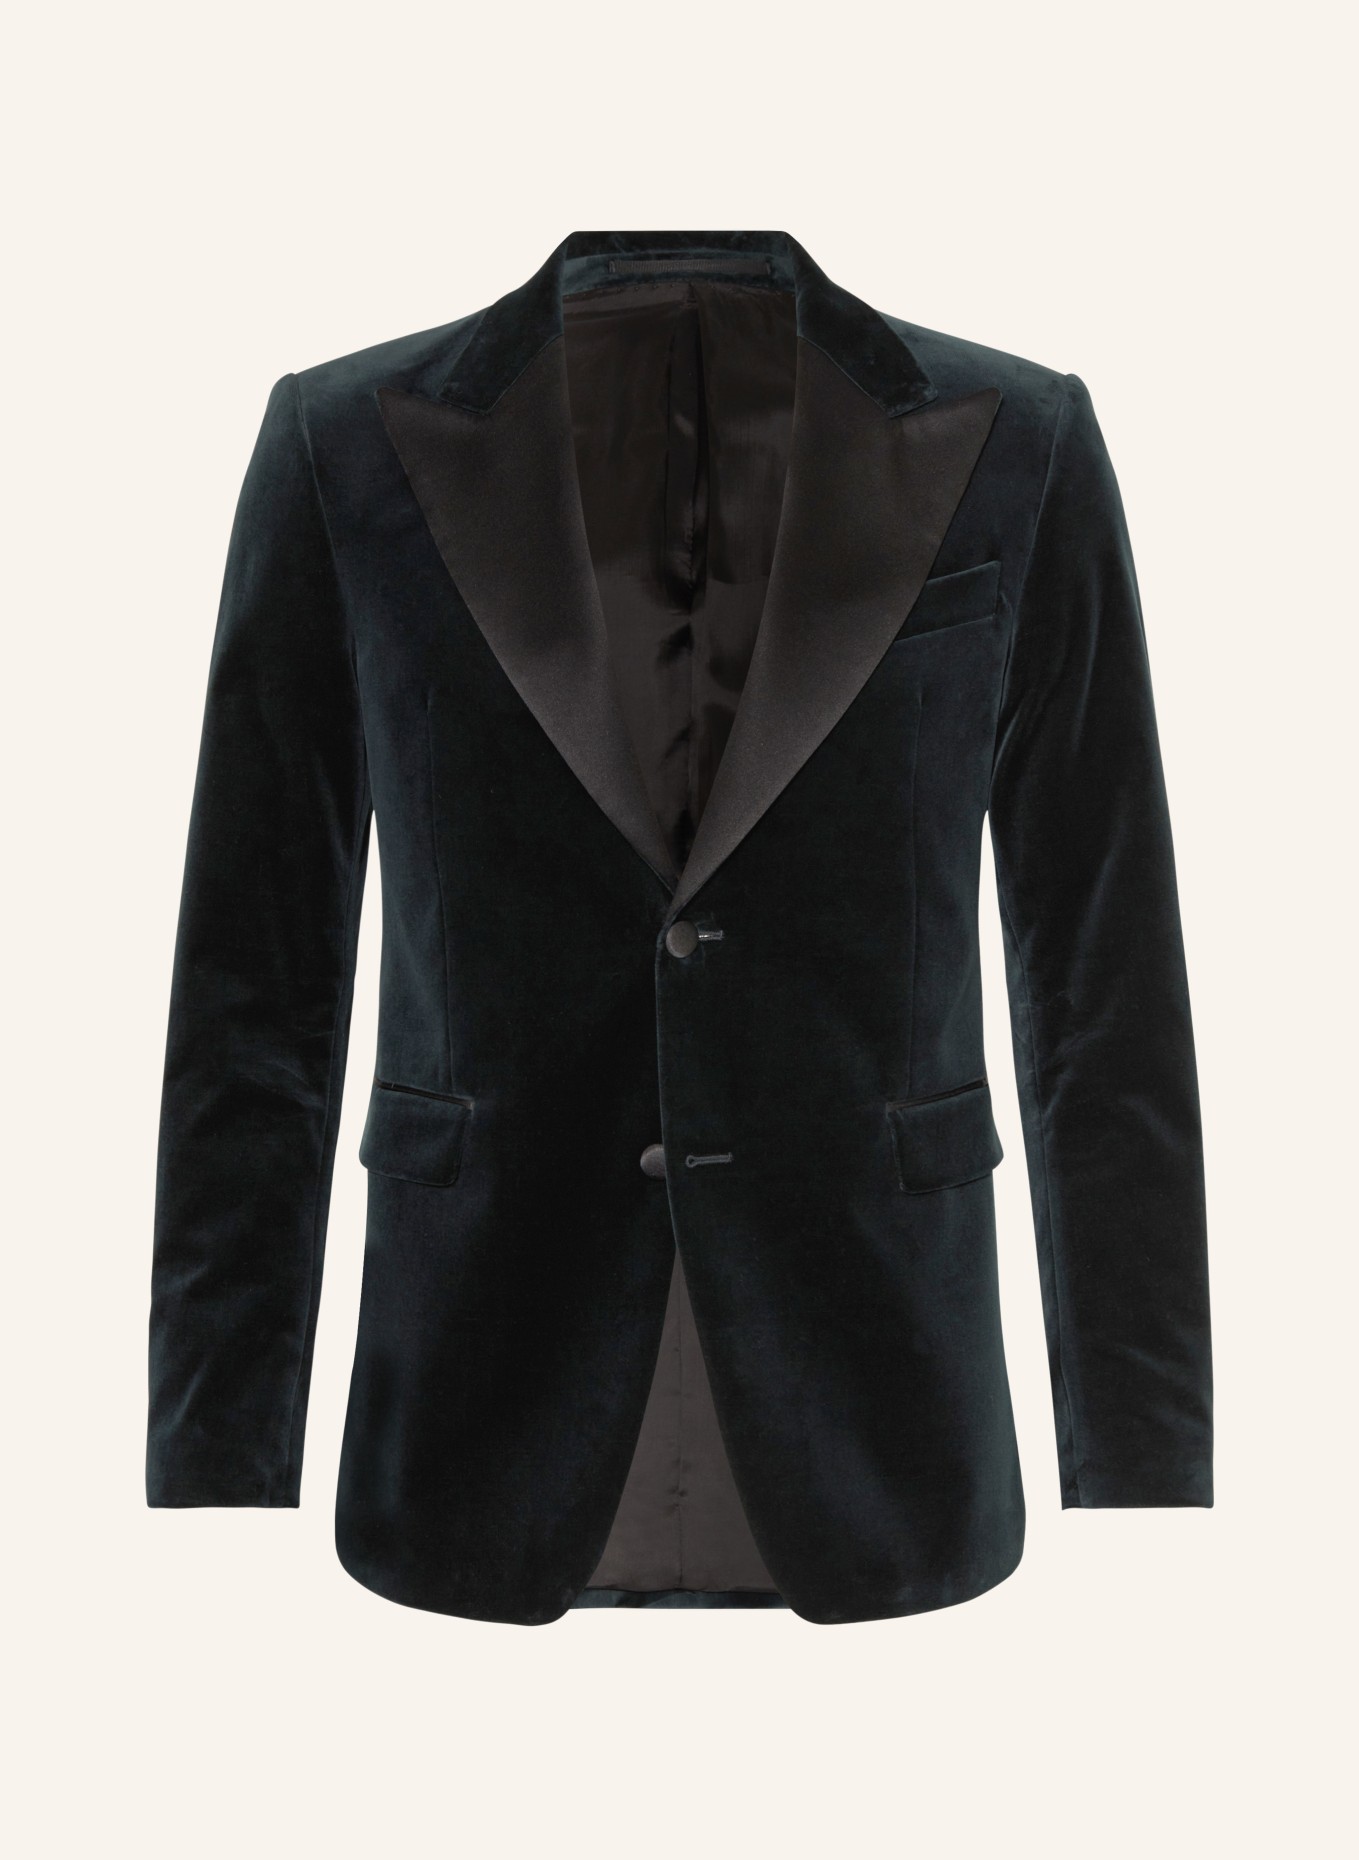 TIGER OF SWEDEN Smoking tailored jacket JEFFERS regular fit made of velvet, Color: DARK GREEN/ BLACK (Image 1)